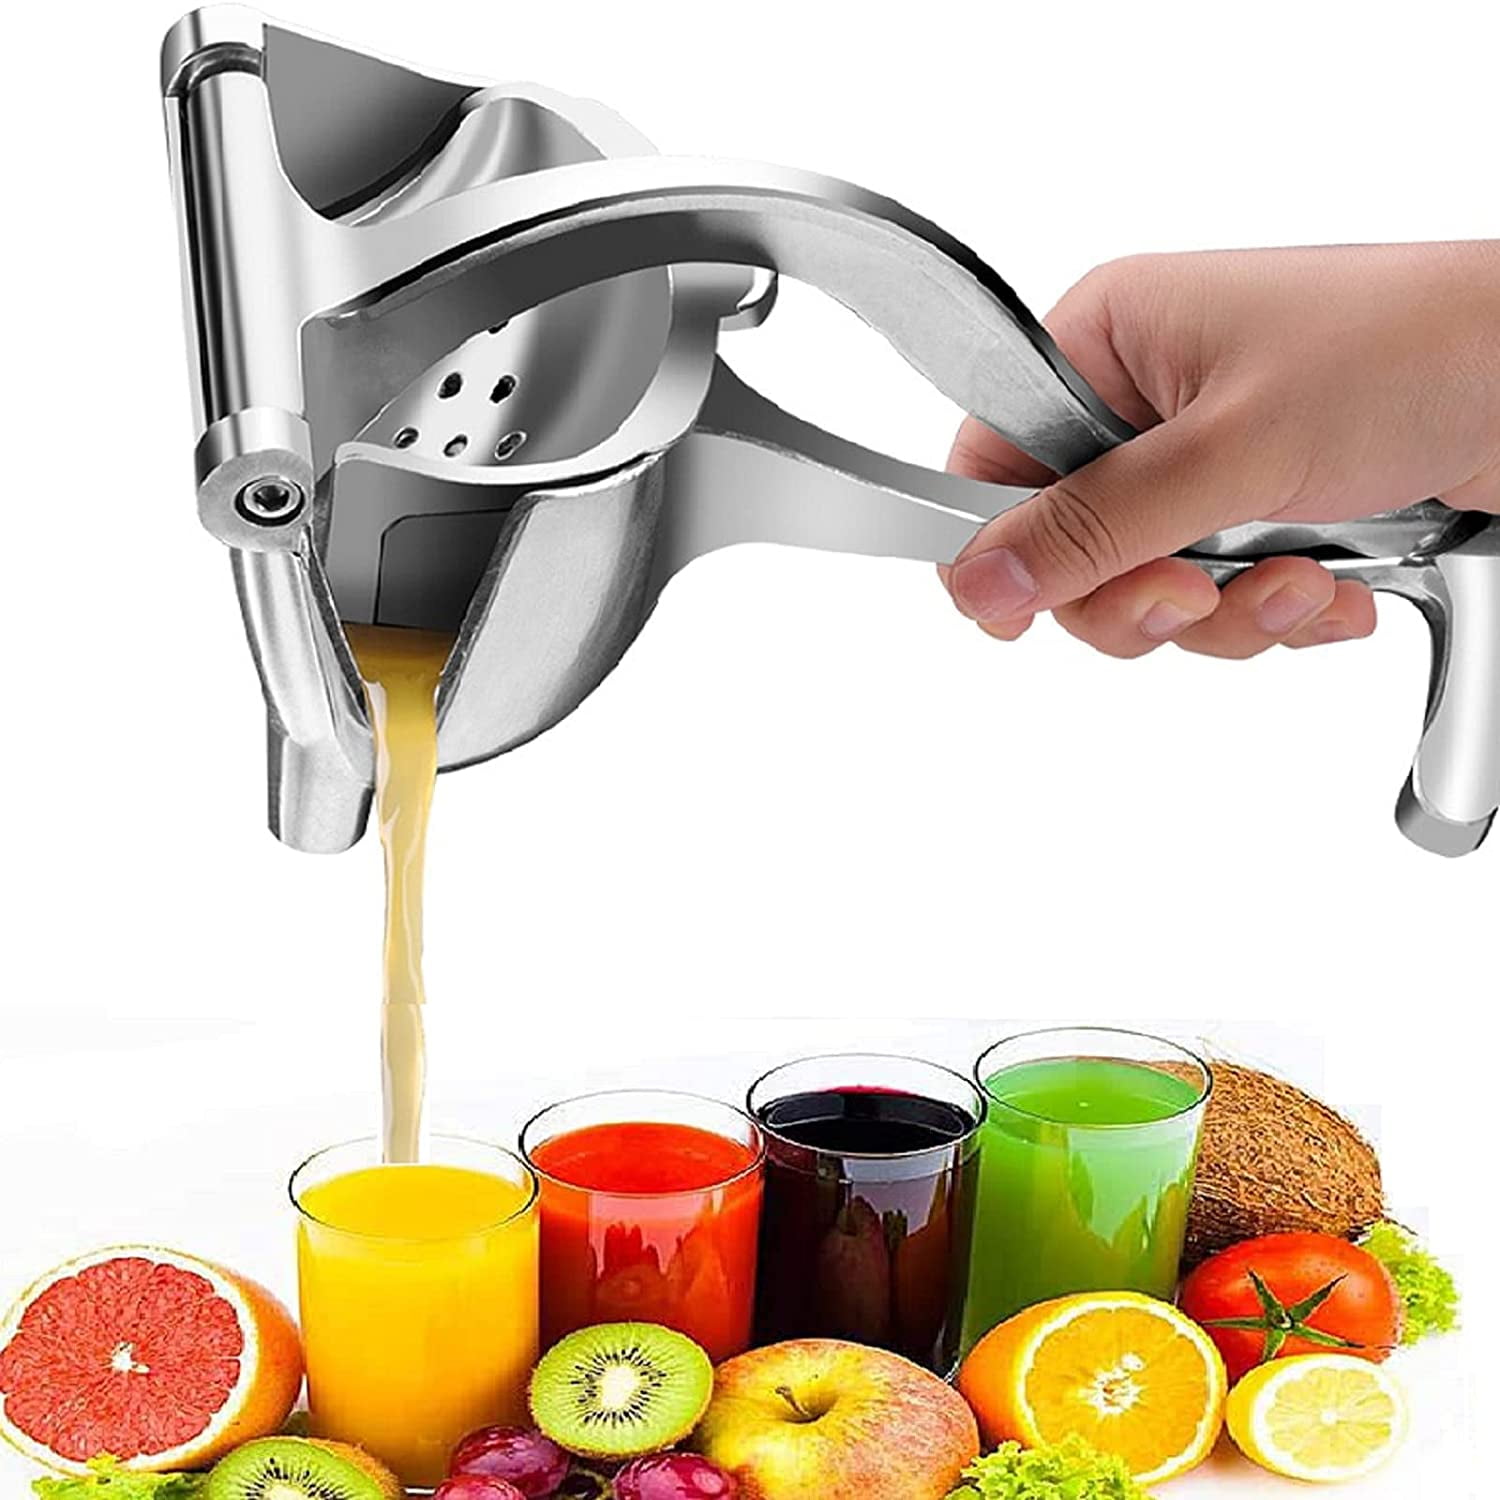 Stainless Steel Manual Juicer Hand Juice Press Squeezer Fruit Juicer Extractor 